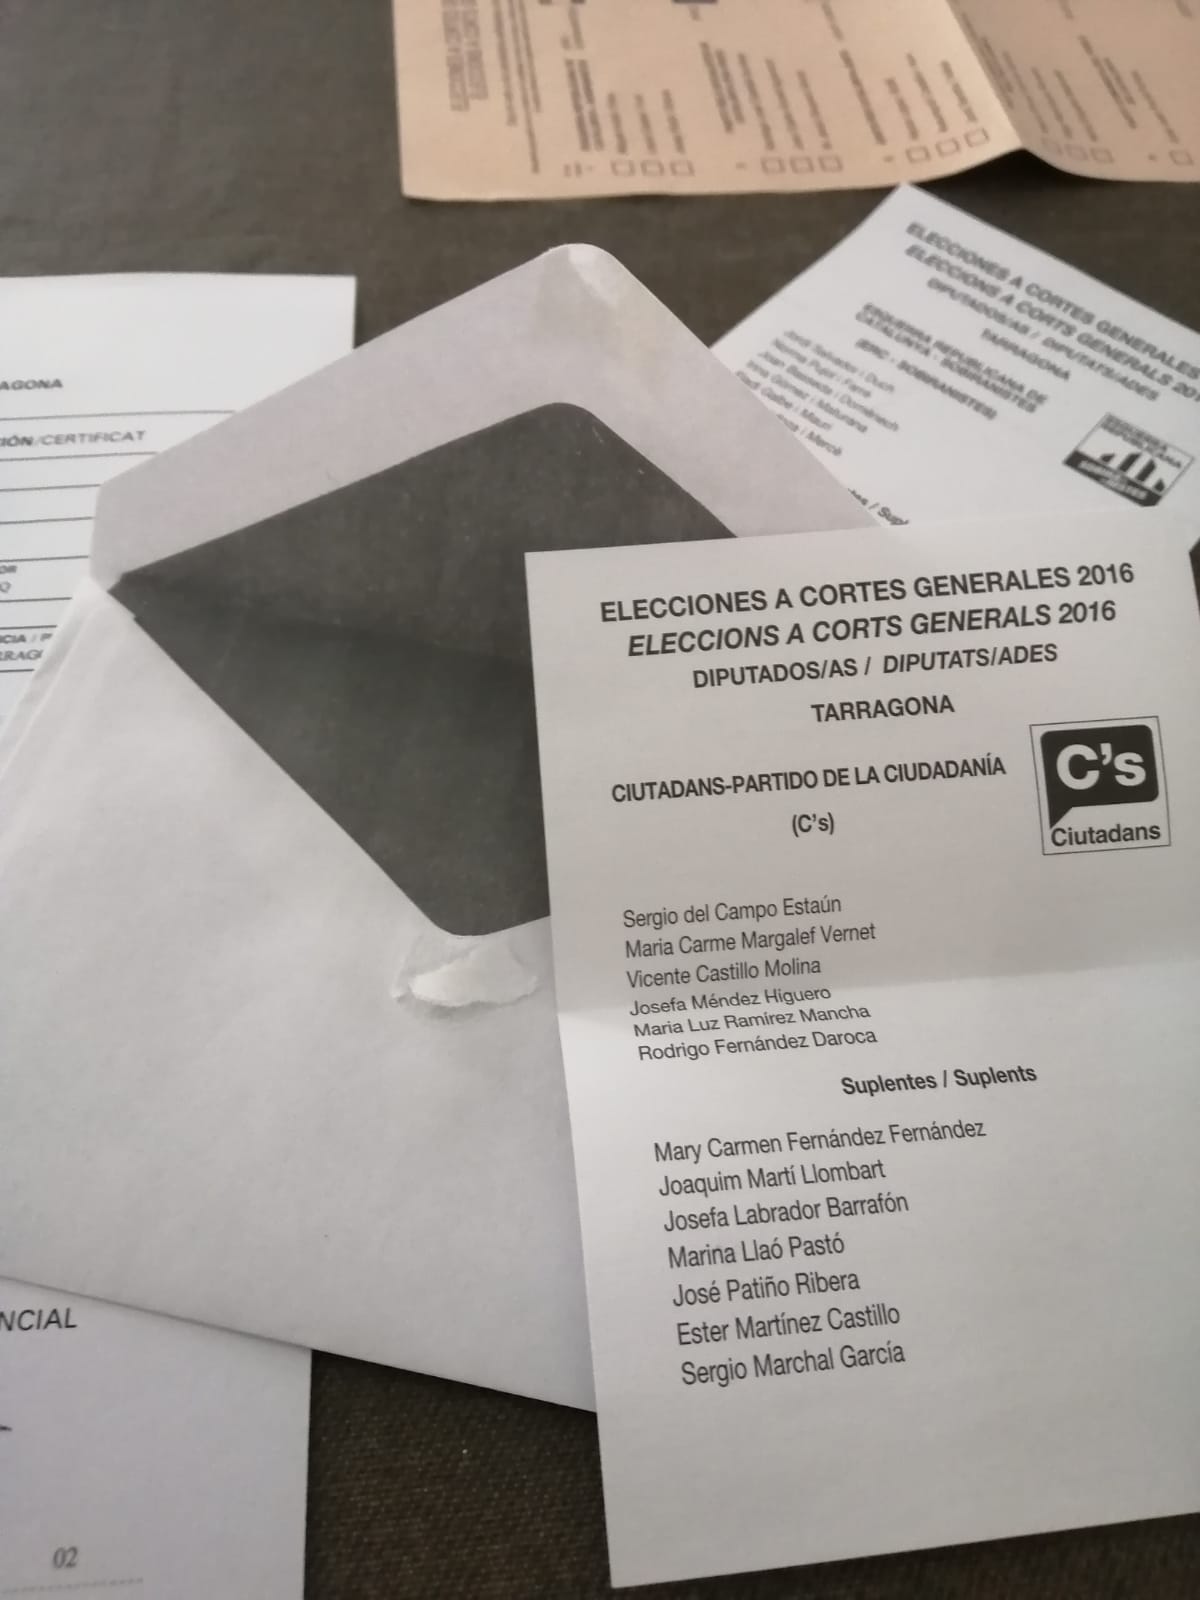 Irregularitats en el vot per correu: rep un sobre tancat amb una papereta de Cs a dins